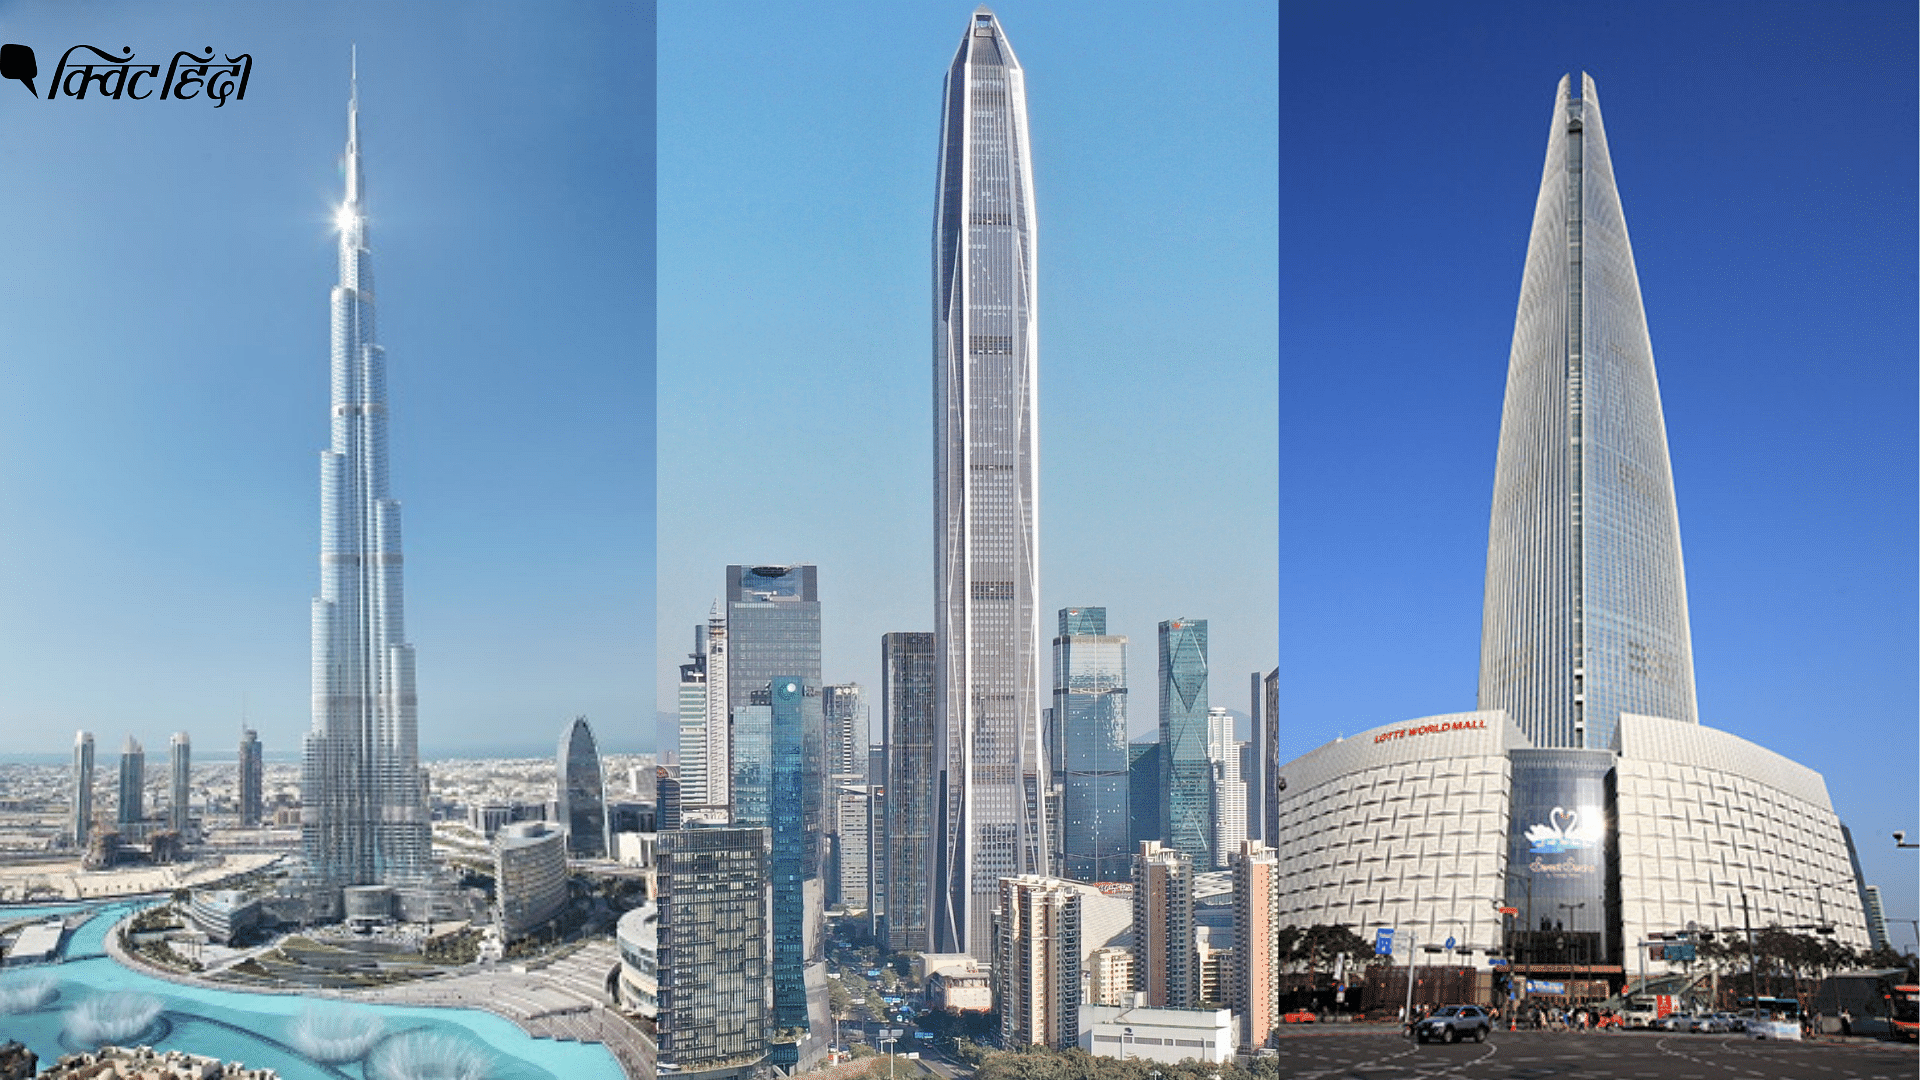 <div class="paragraphs"><p>अभी बुर्ज खलीफा दुनिया की सबसे ऊंची इमारत है</p></div>